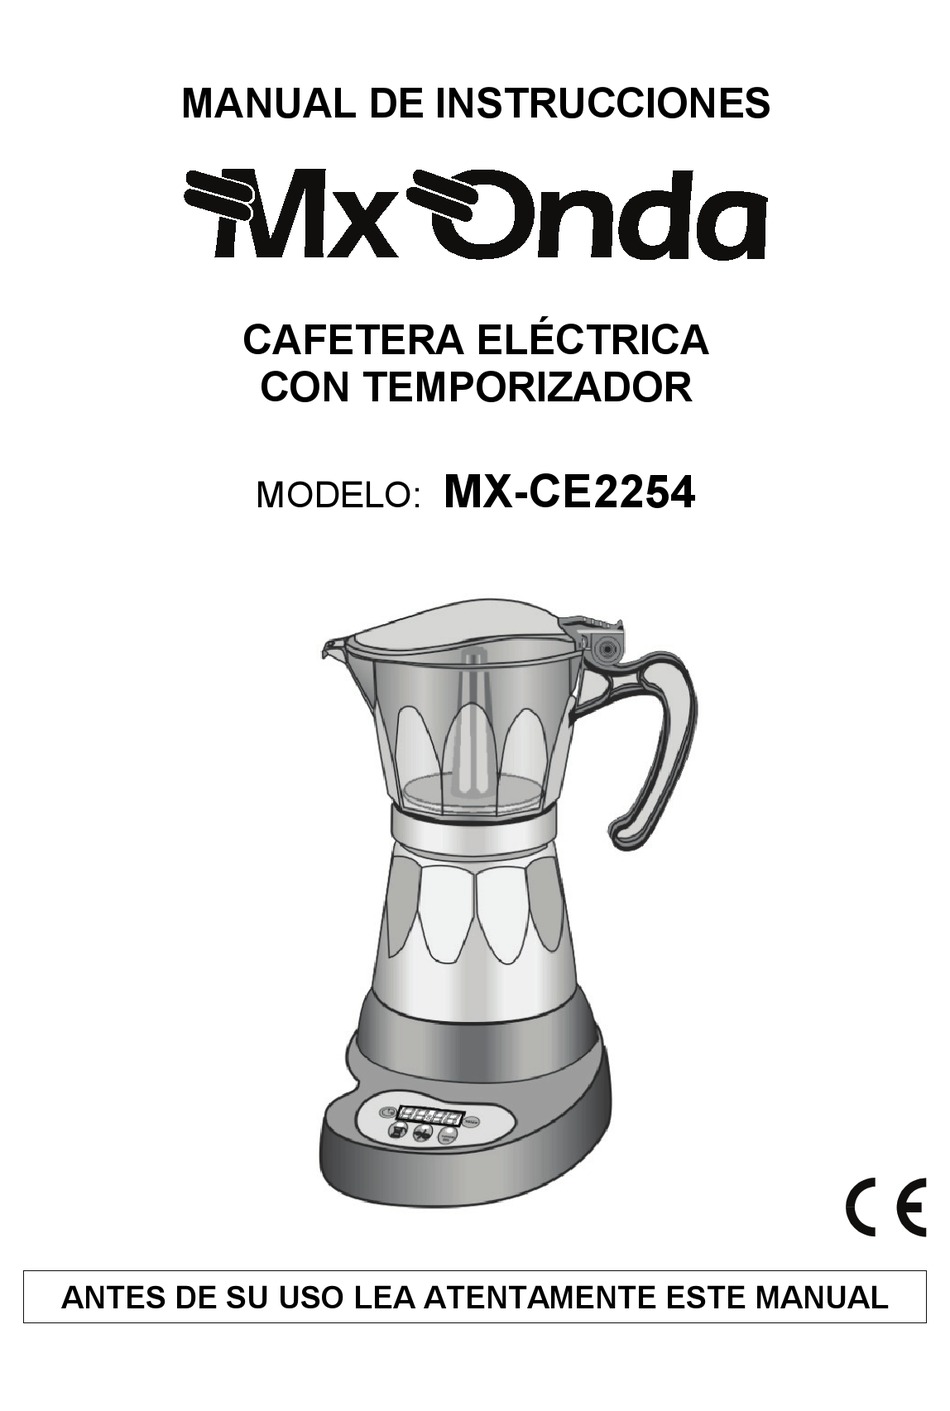 Cafetera eléctrica con temporizador MX-CE2254